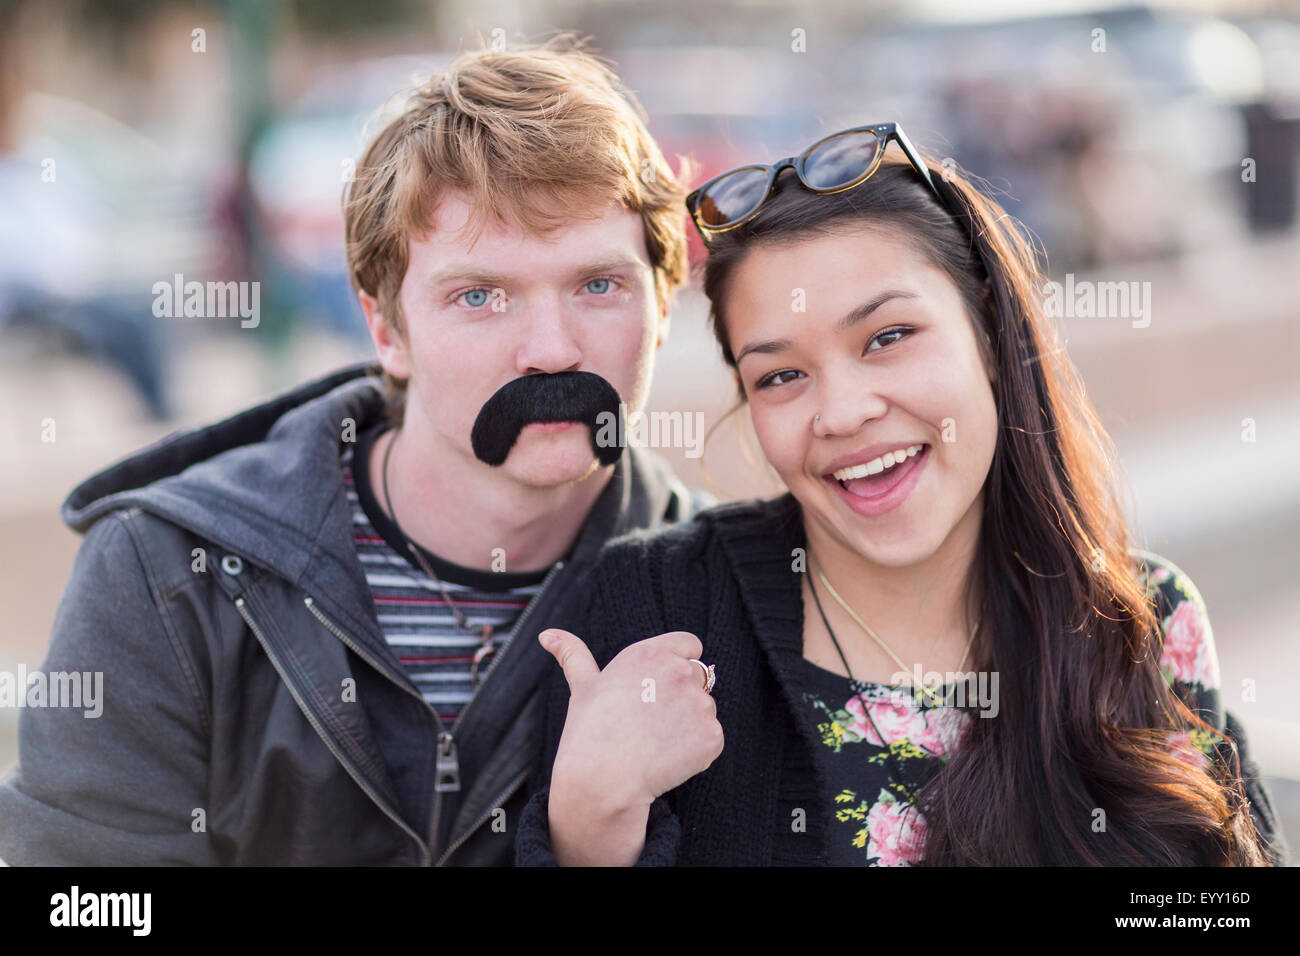 La pareja de adolescentes jugando con bigote falso Foto de stock